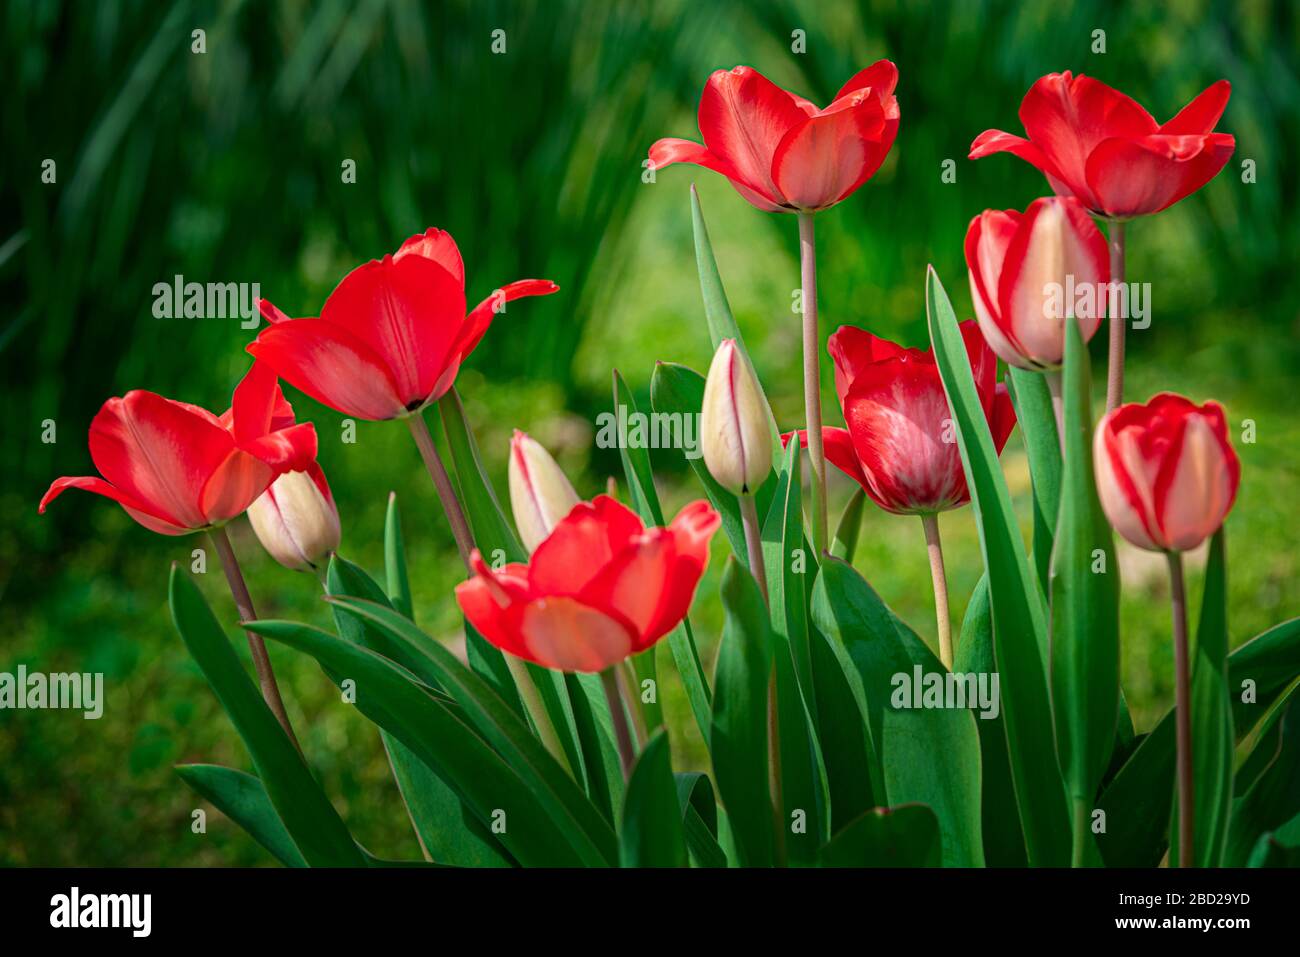 Colpo orizzontale di tulipani rossi con verde. Spazio di copia in alto e in basso. Foto Stock